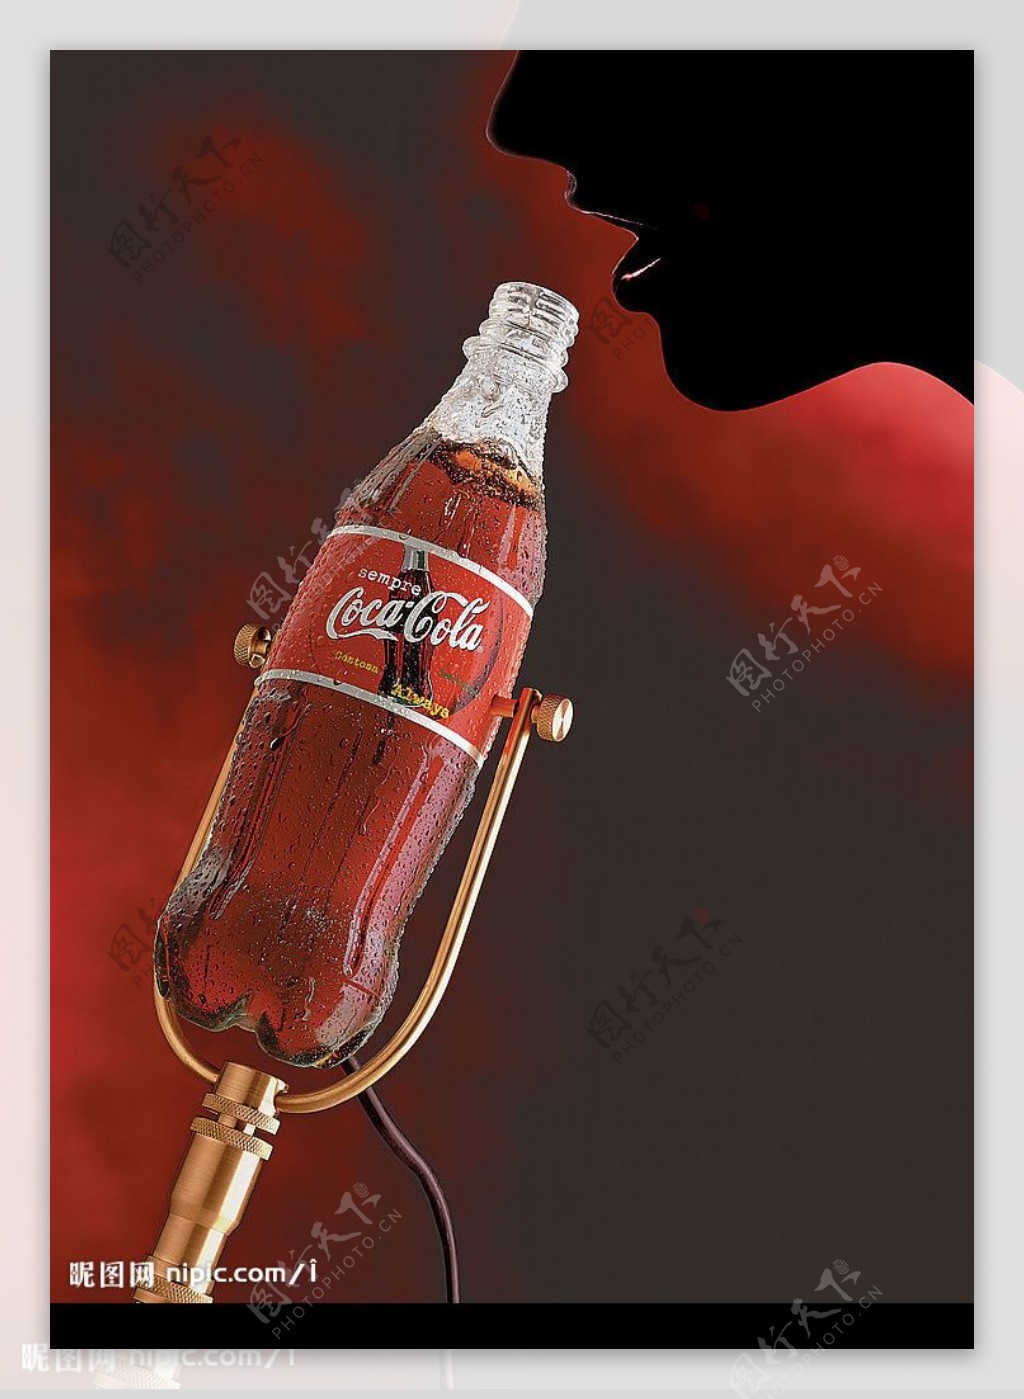 可口可乐创意宣传广告图片